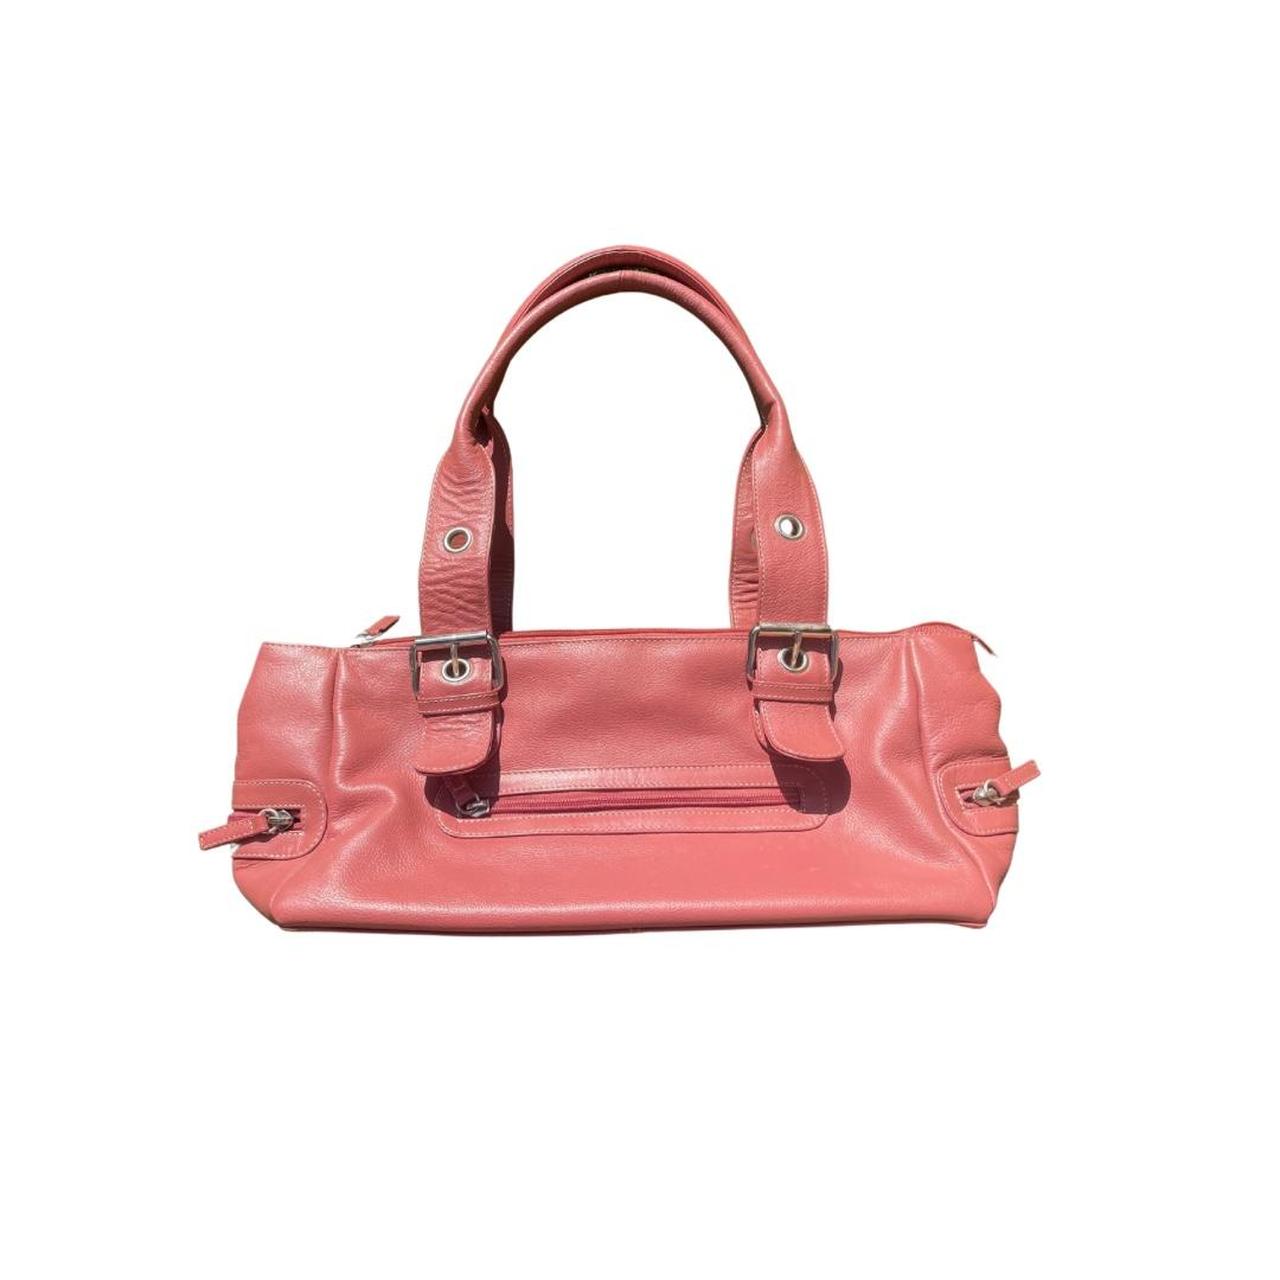 Get Salmon Pink Sling Bag at ₹ 899